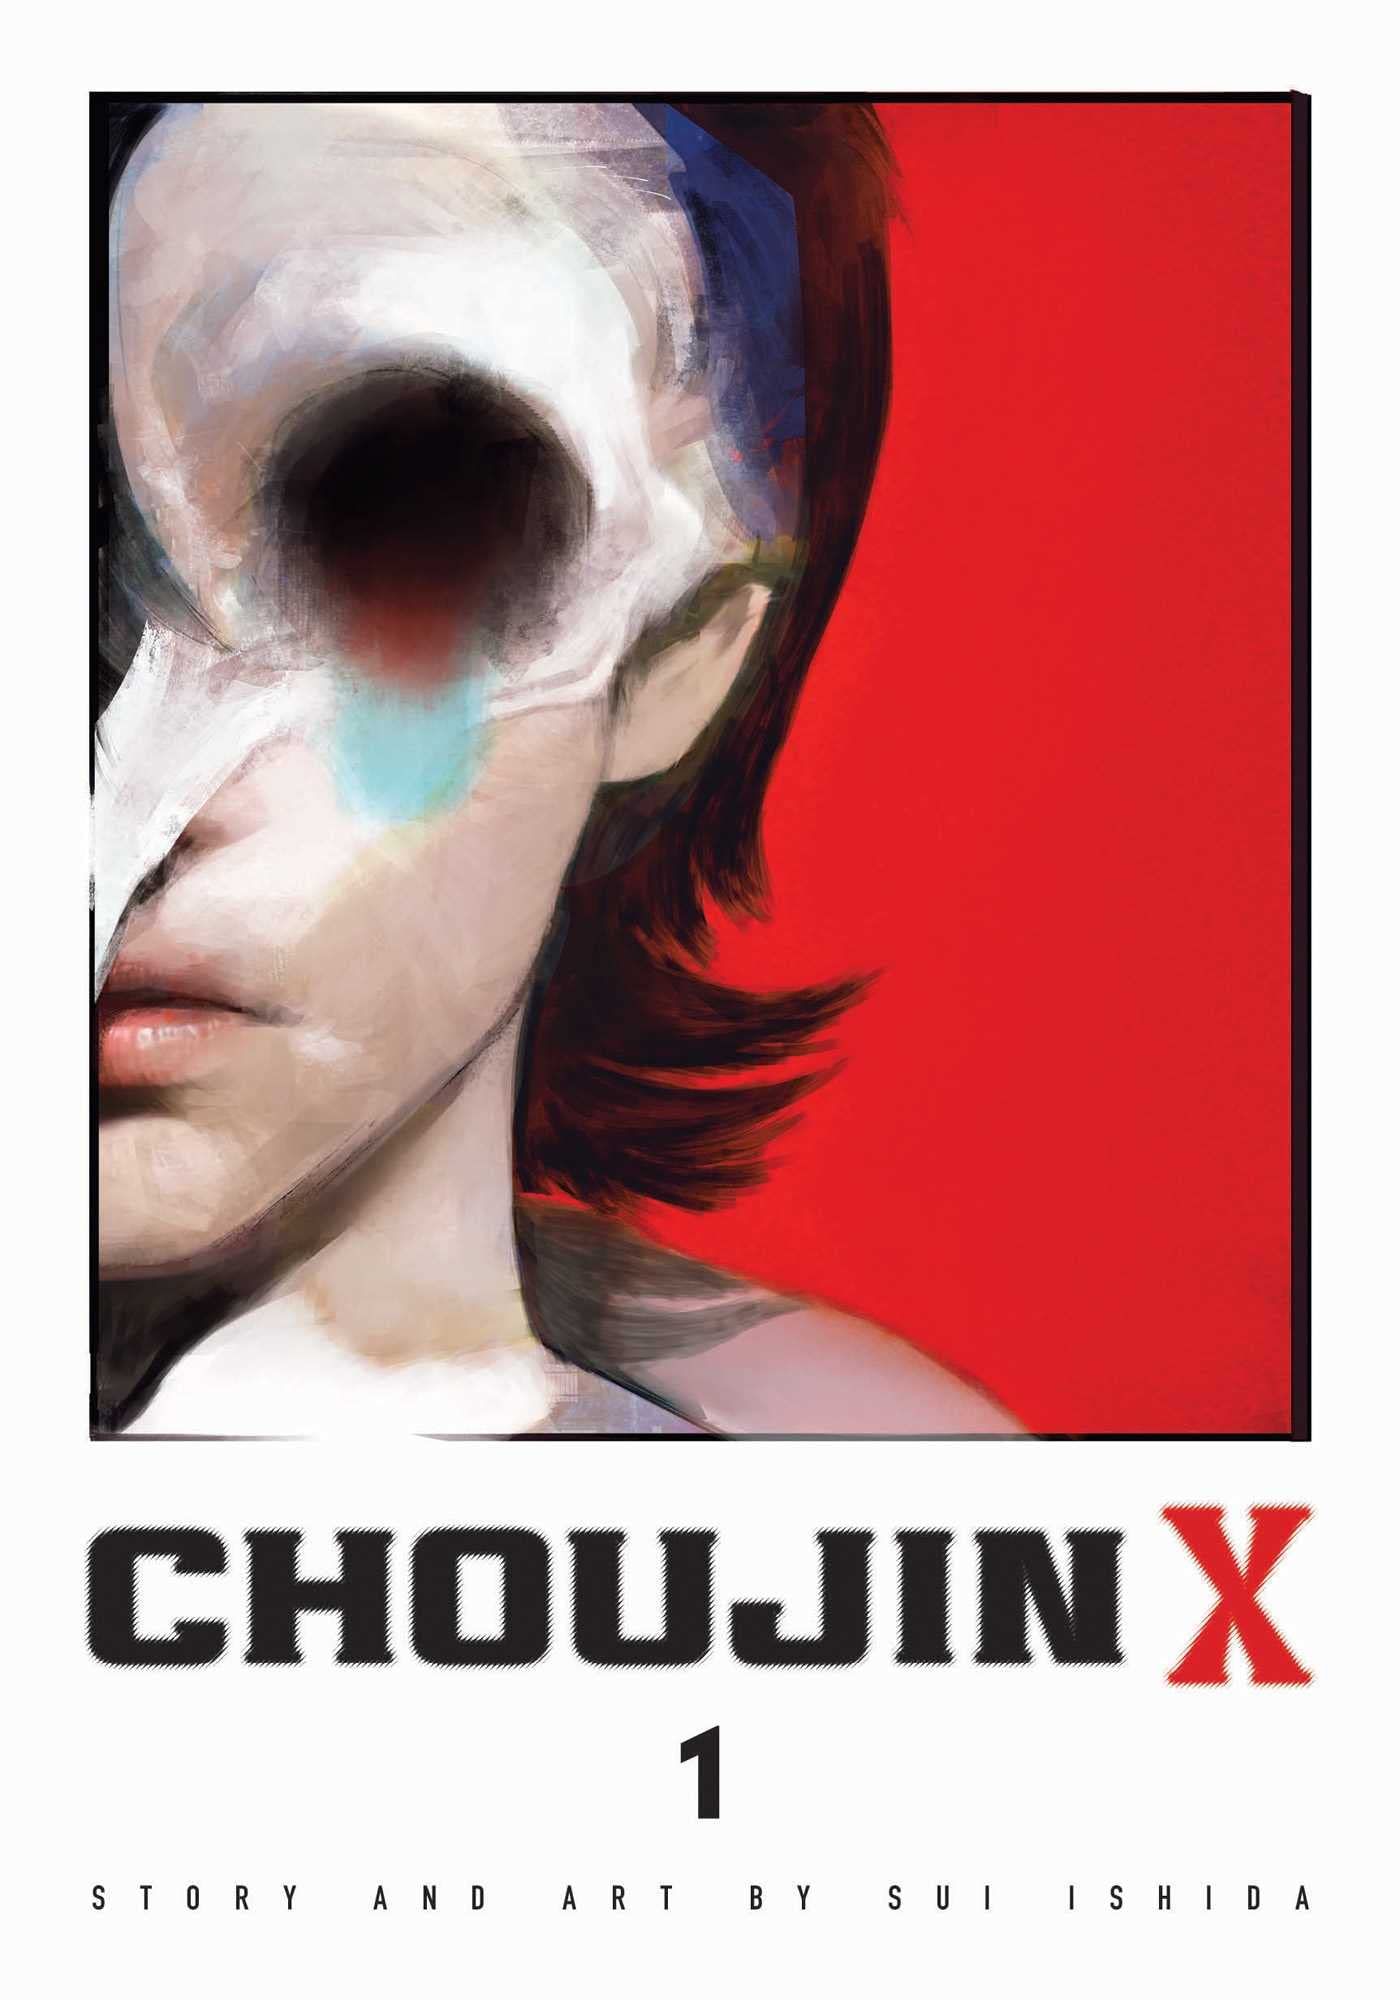 Choujin X by Sui Ishida cover